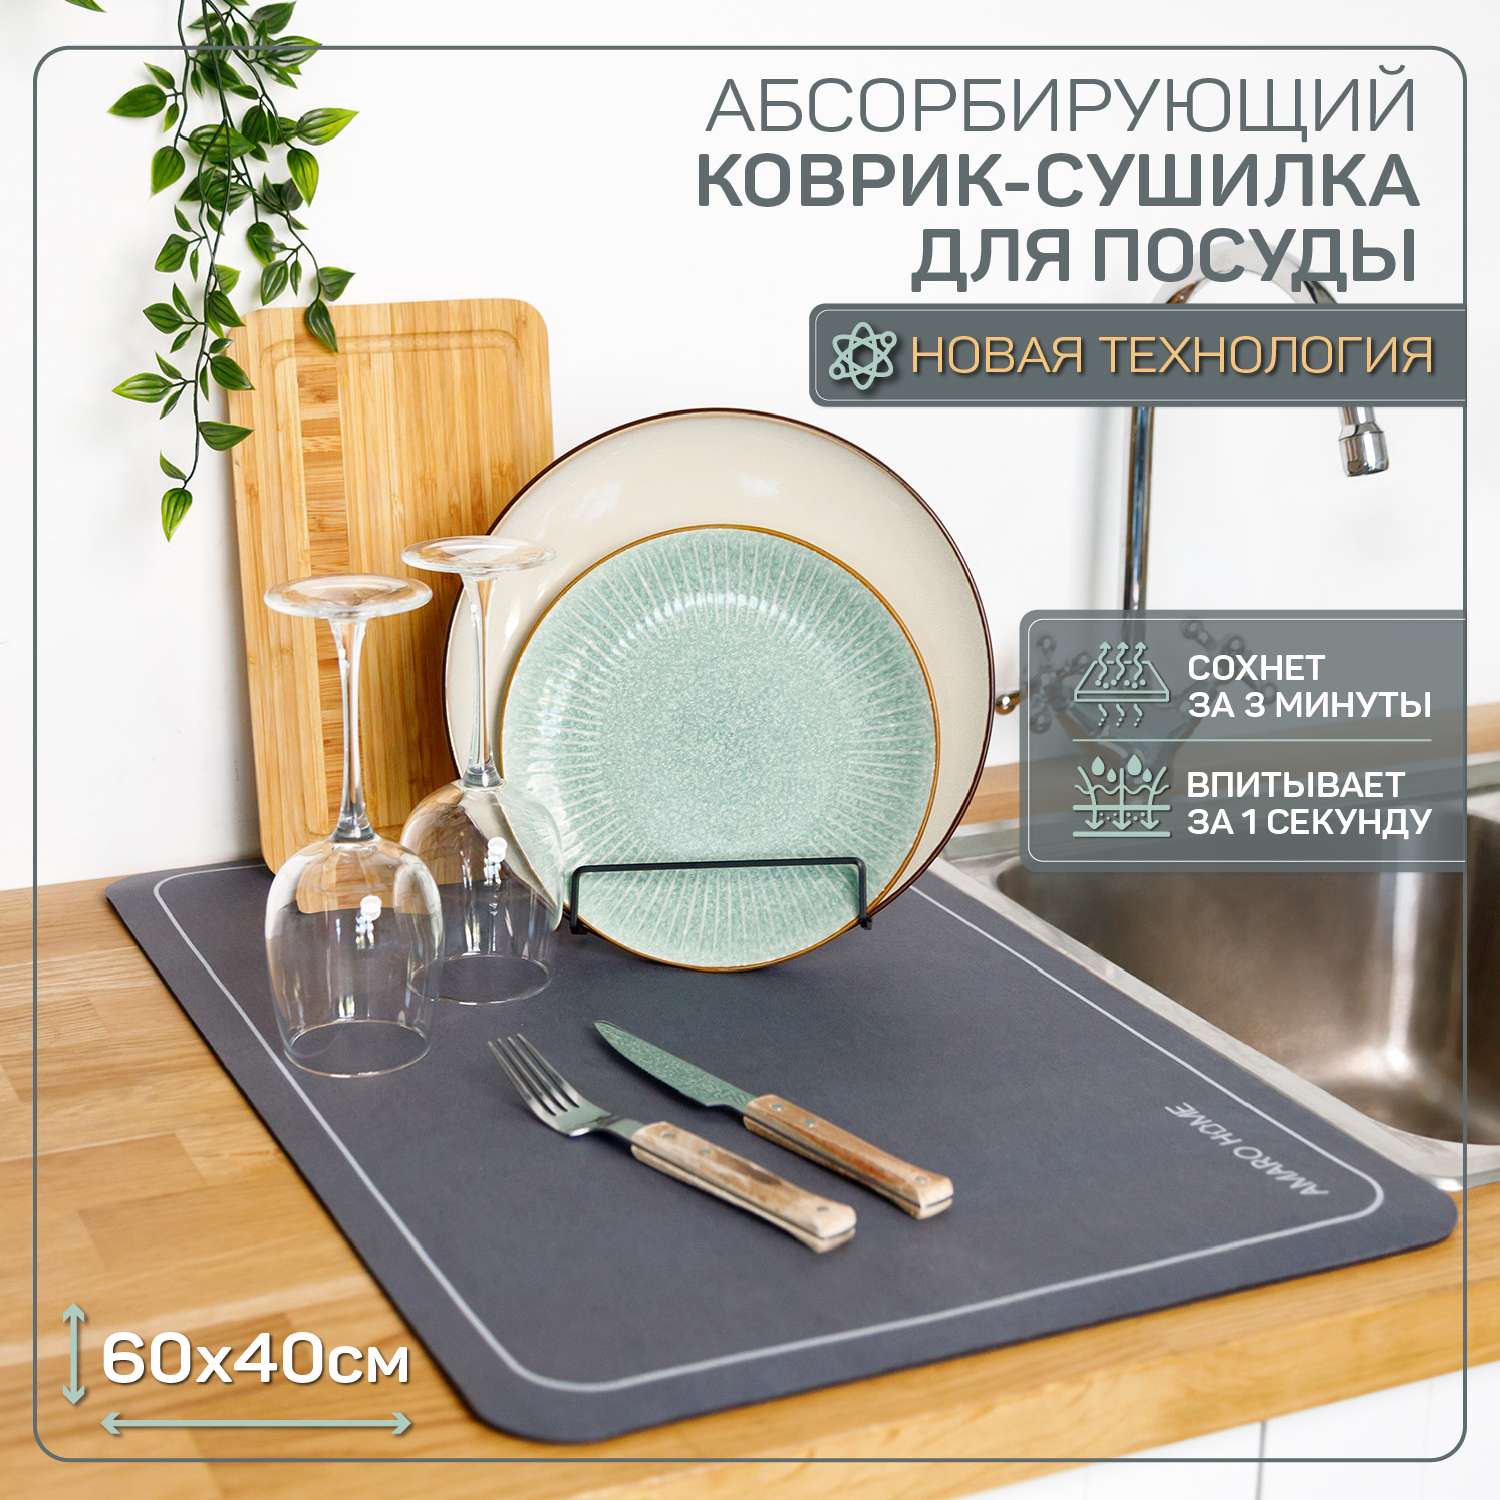 Коврик для посуды AMARO HOME с абсорбирующим эффектом мокрый асфальт 40х60 см - фото 2